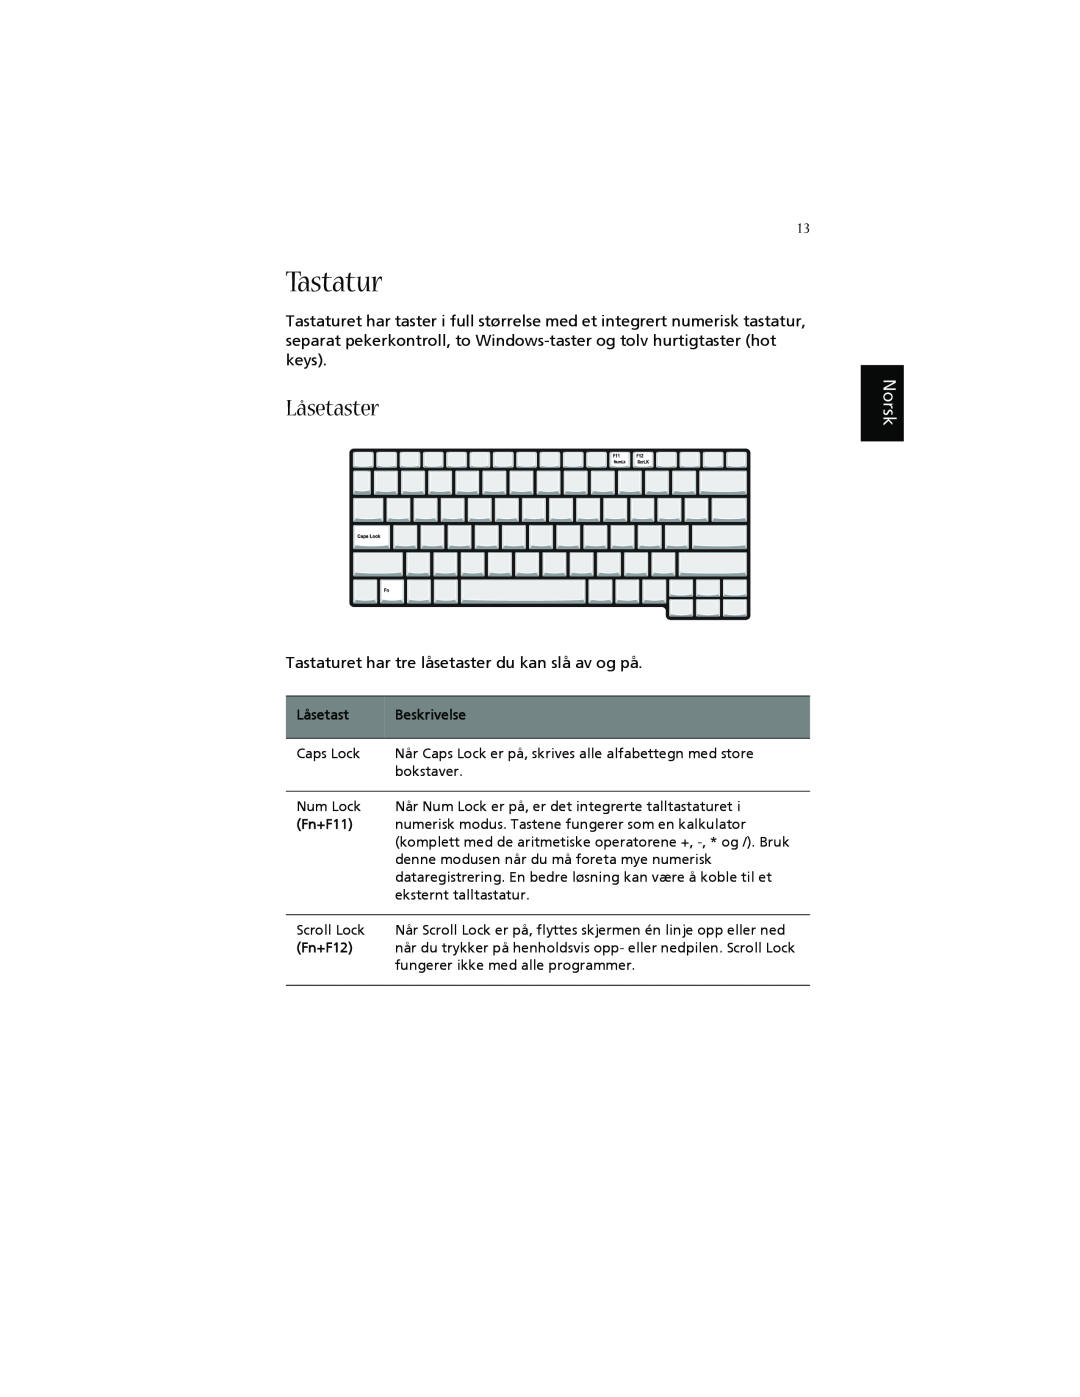 Acer 1660 manual Tastatur, Låsetaster, Norsk, Beskrivelse, Fn+F11, Fn+F12 